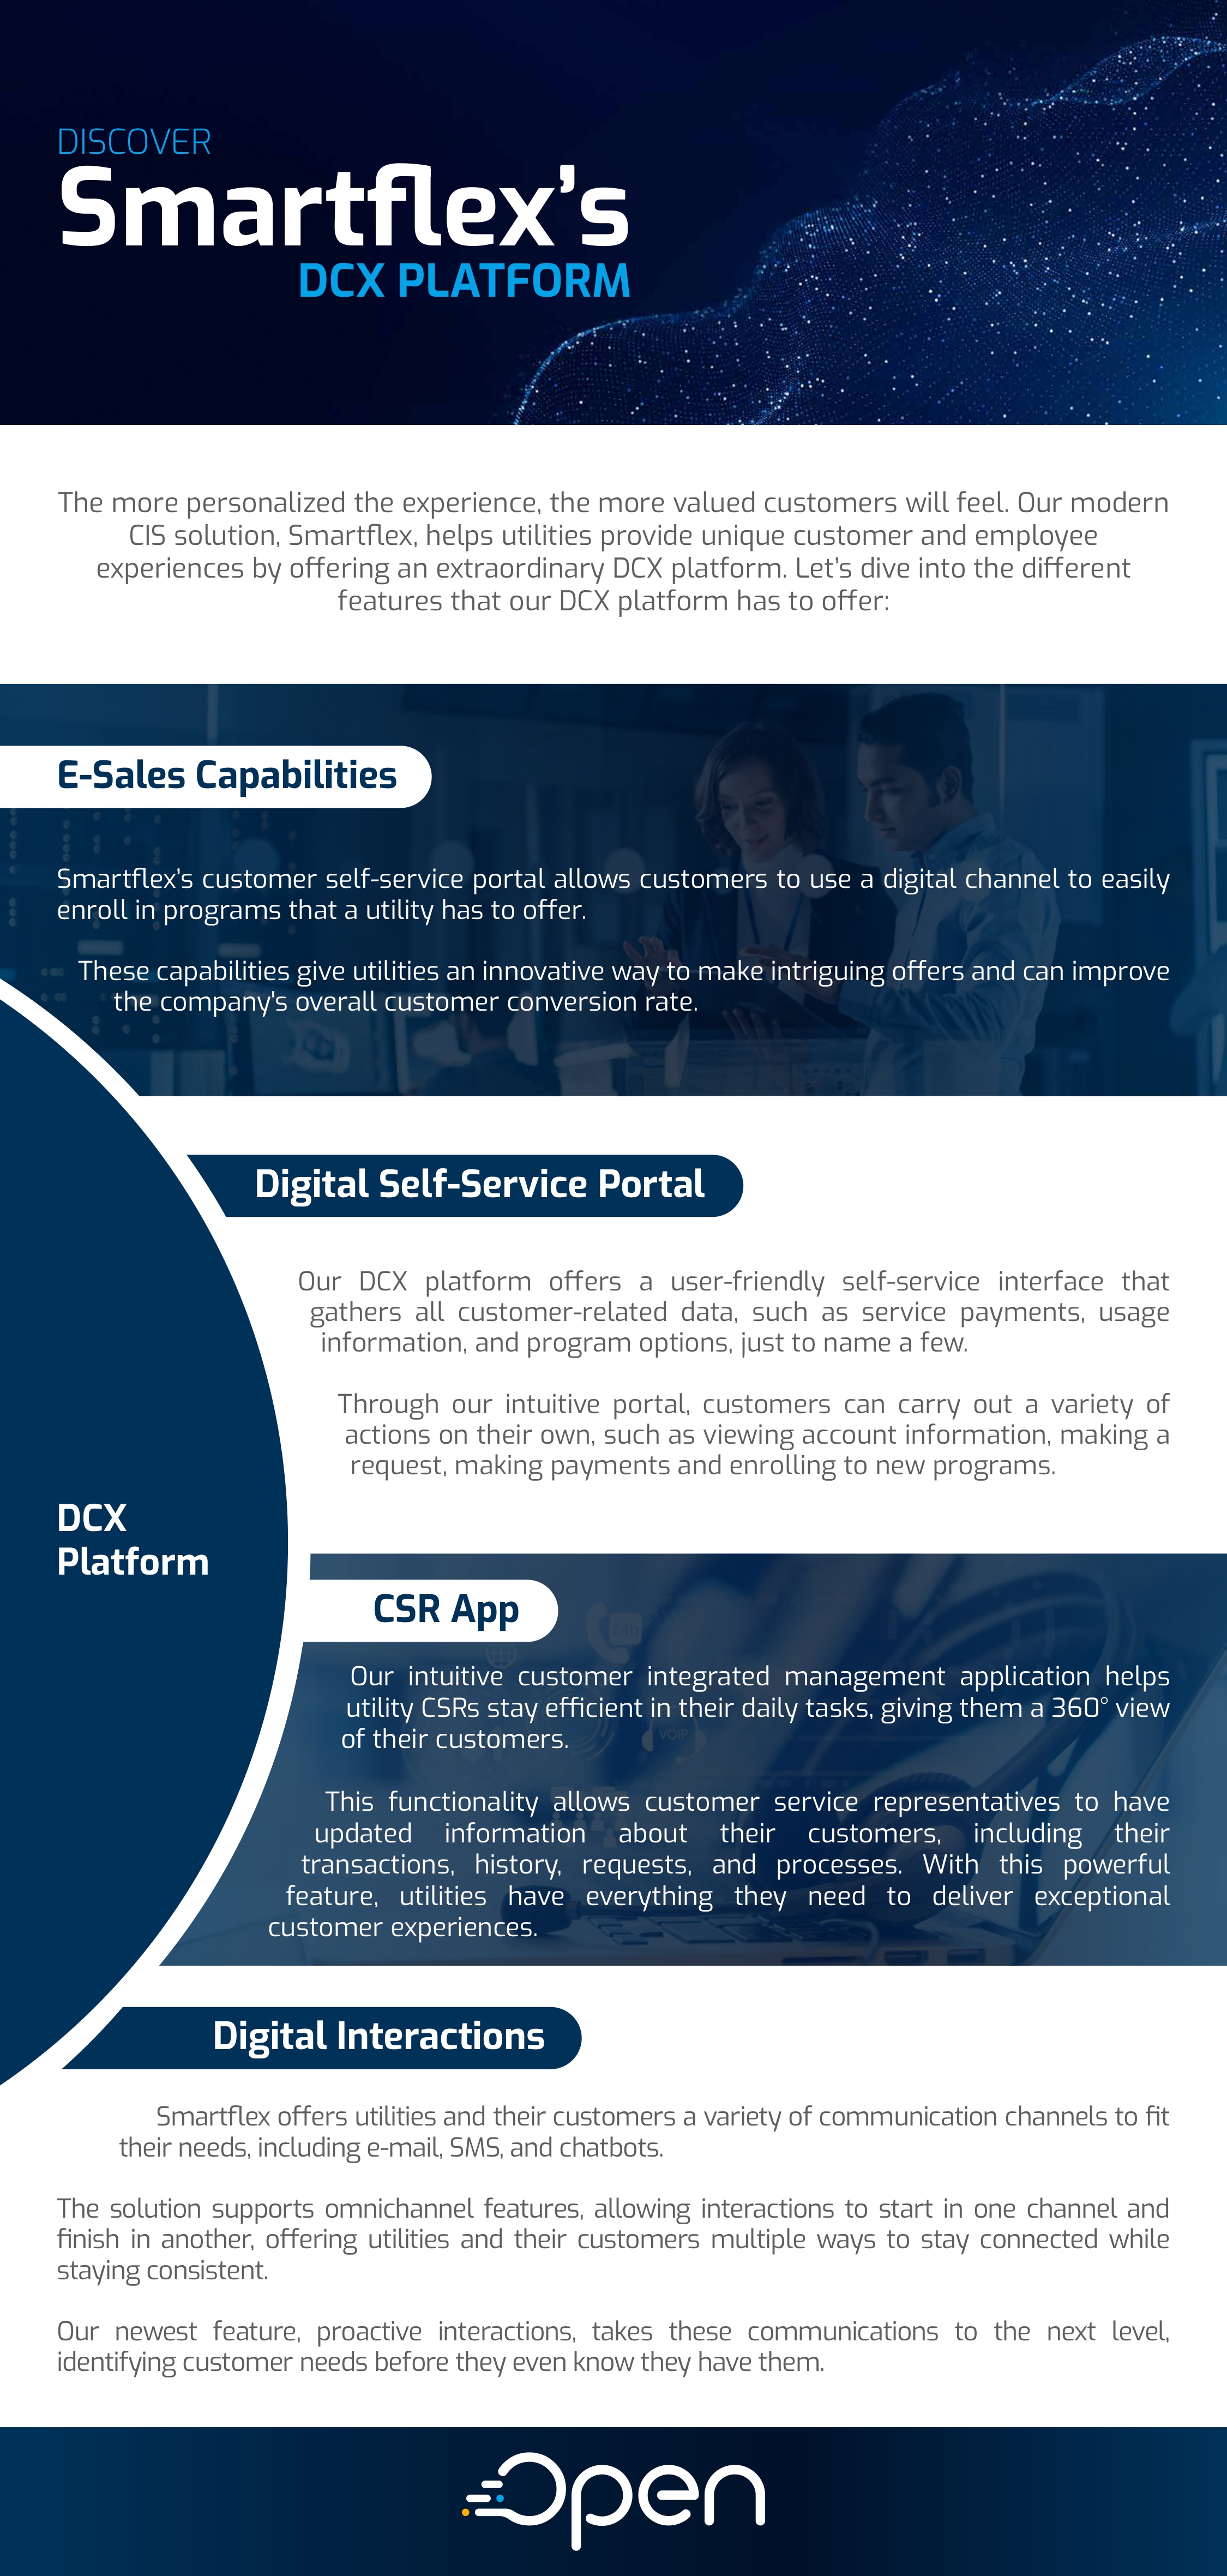 Smartflex DCX platform